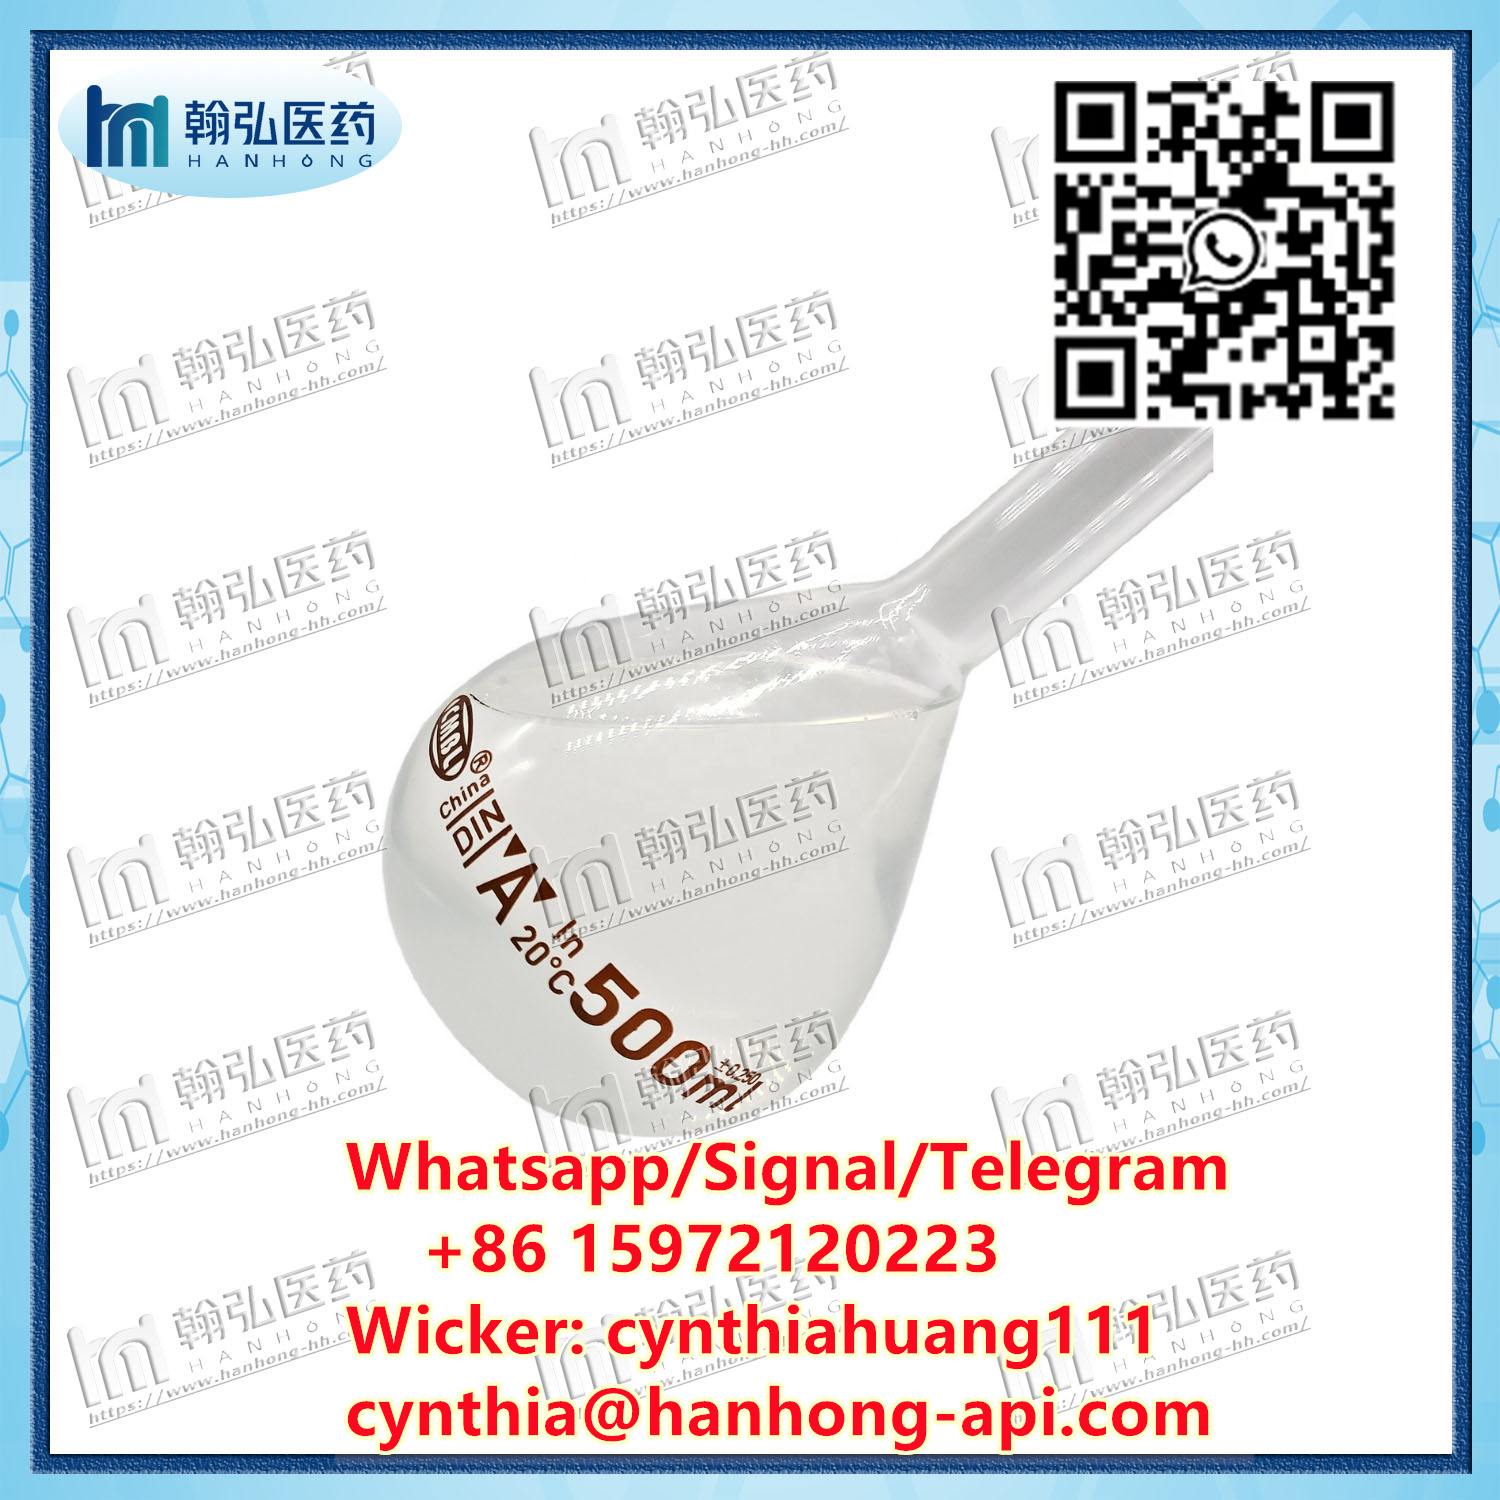 Benzyl Alcohol CAS 100-51-8 Whatsapp: + 86 15972120223 Wicker: Cynthiahuang111